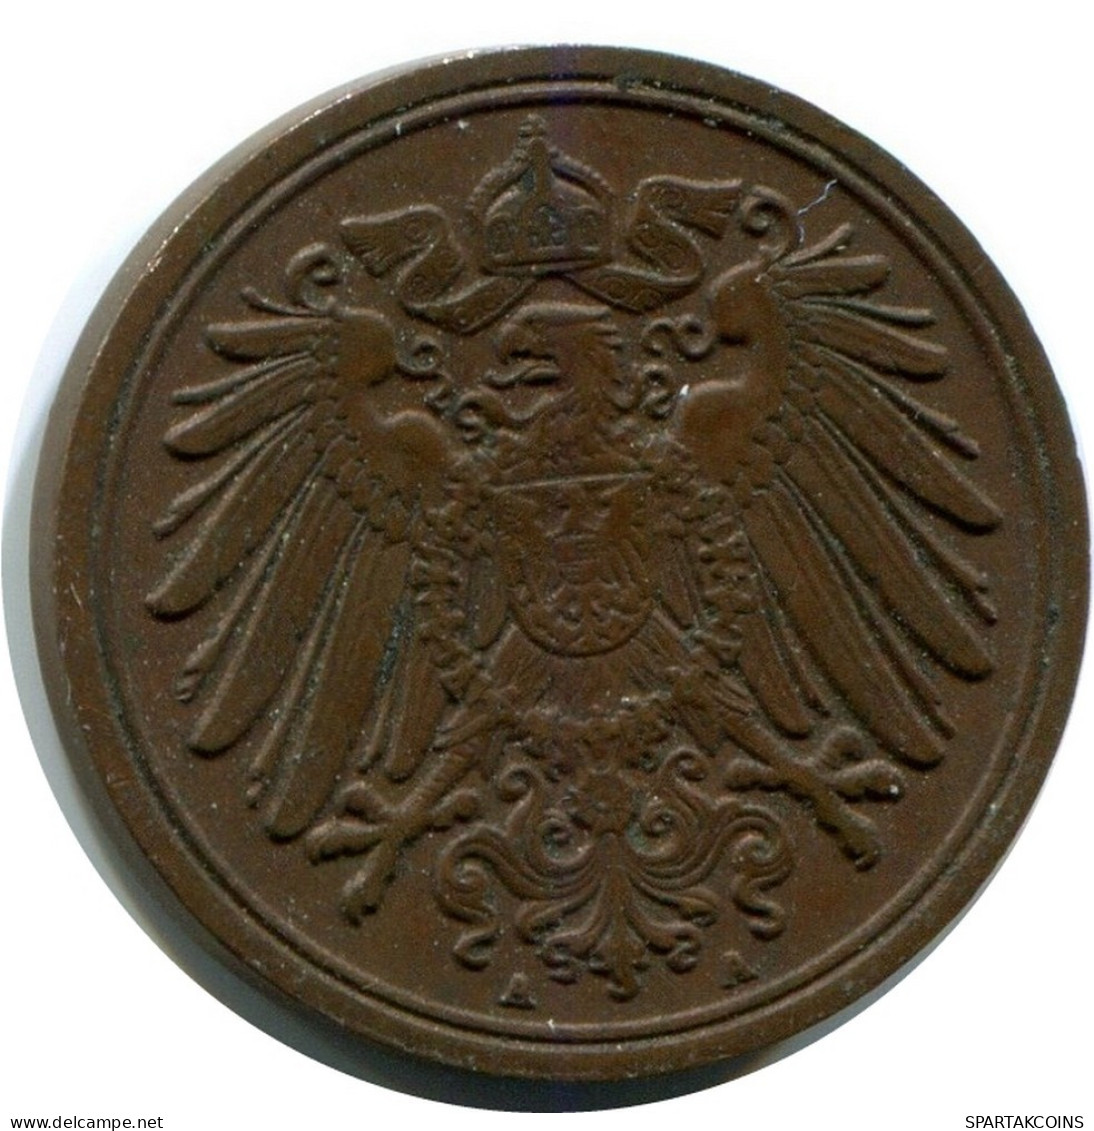 1 PFENNIG 1911 A ALEMANIA Moneda GERMANY #AX396.E.A - 1 Pfennig